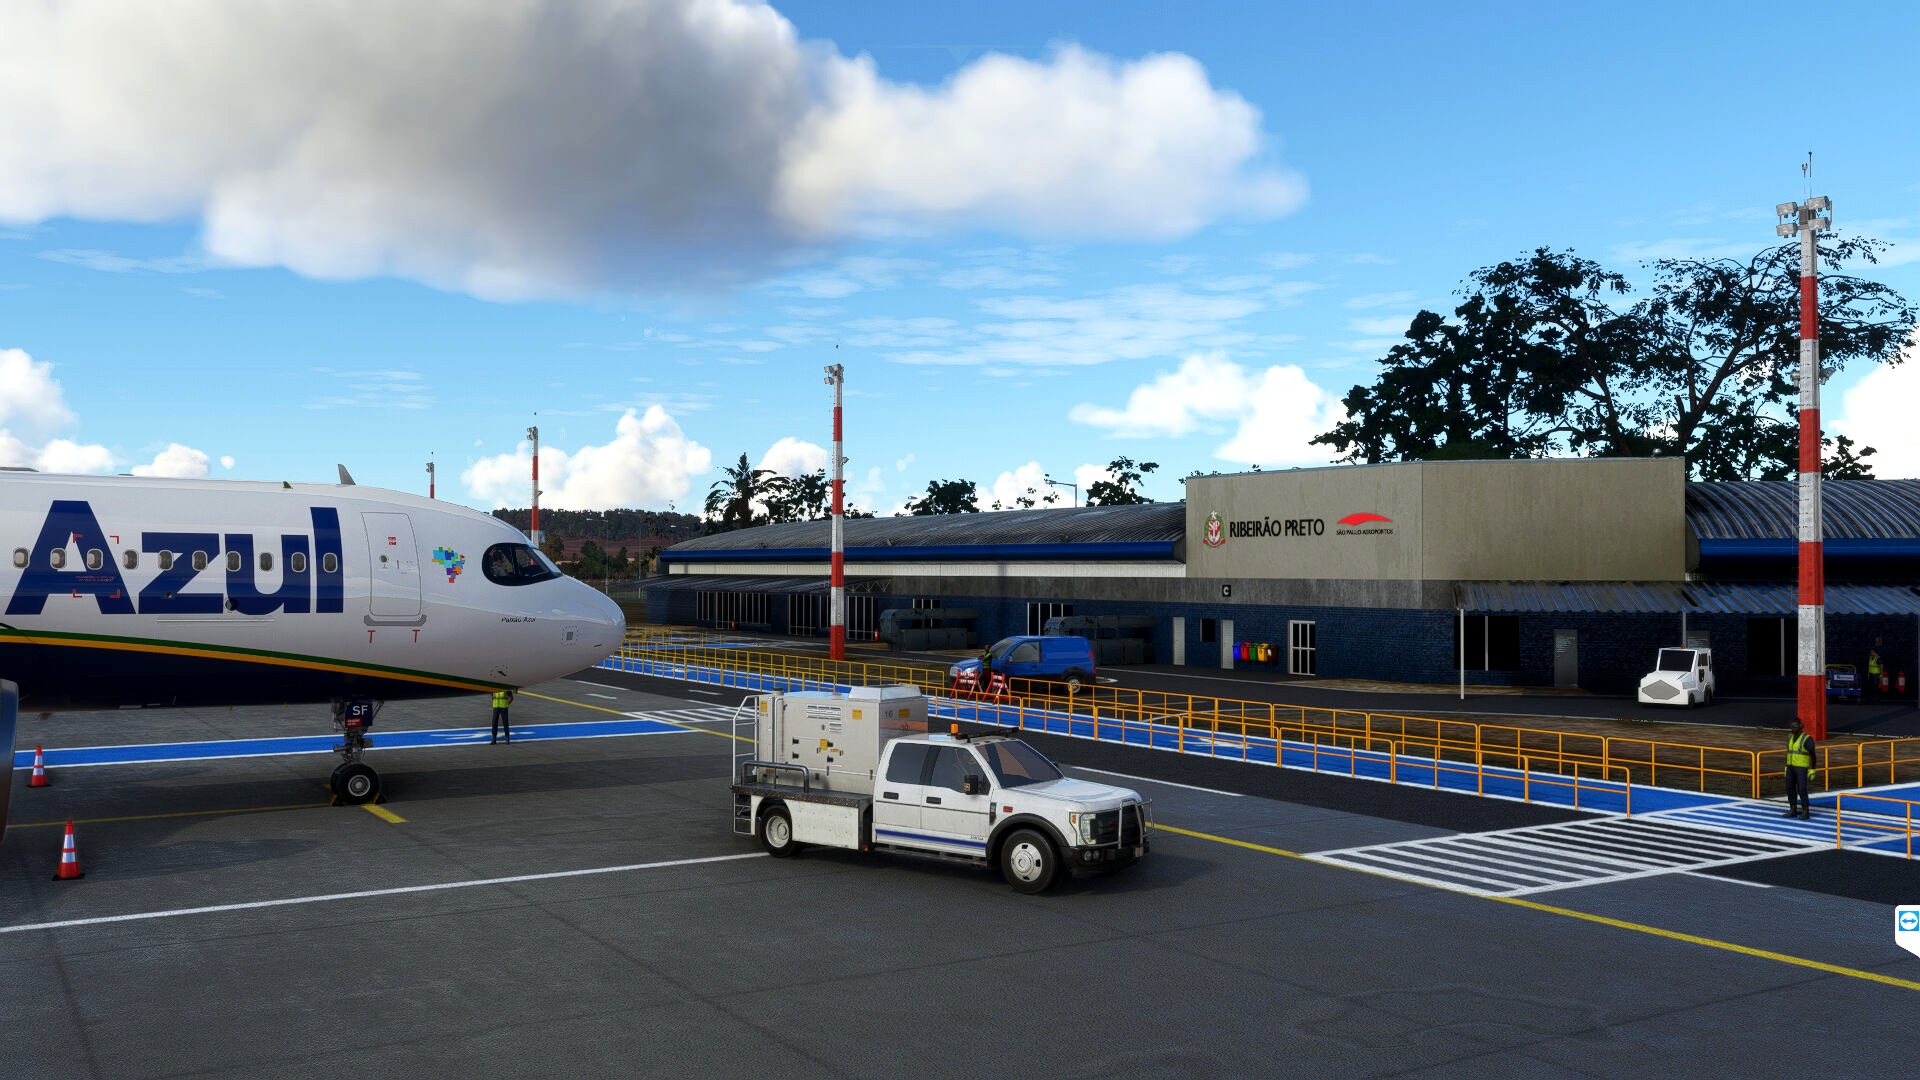 SBRP - Ribeirão Preto SP Airport Microsoft Flight Simulator